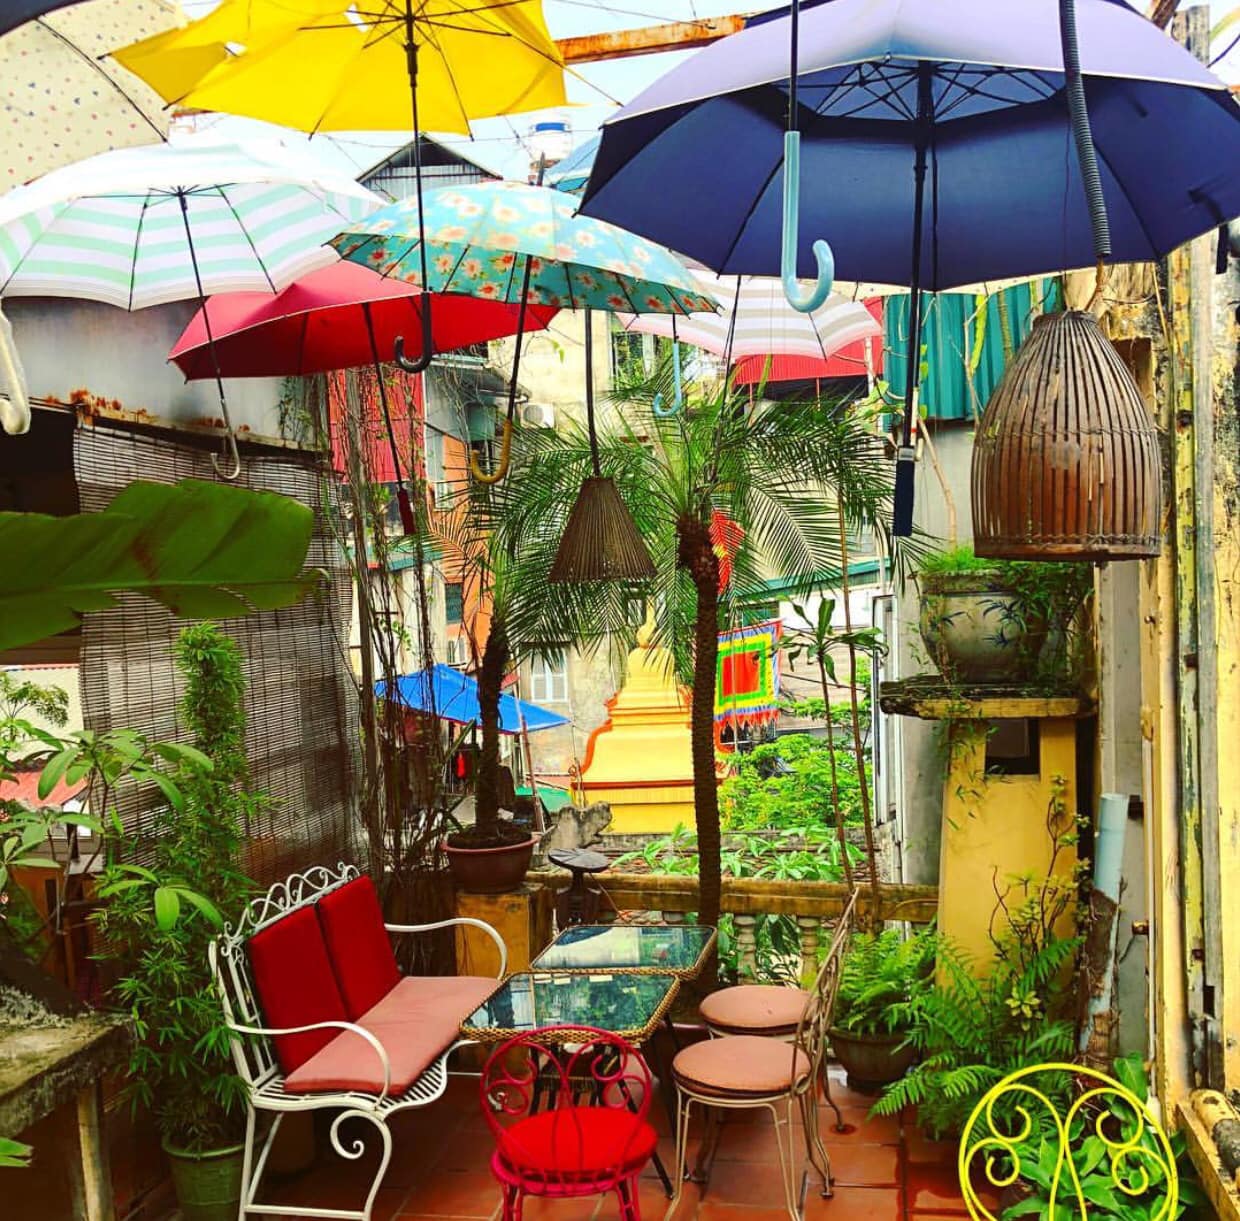 cafe nola colorful umbrellas